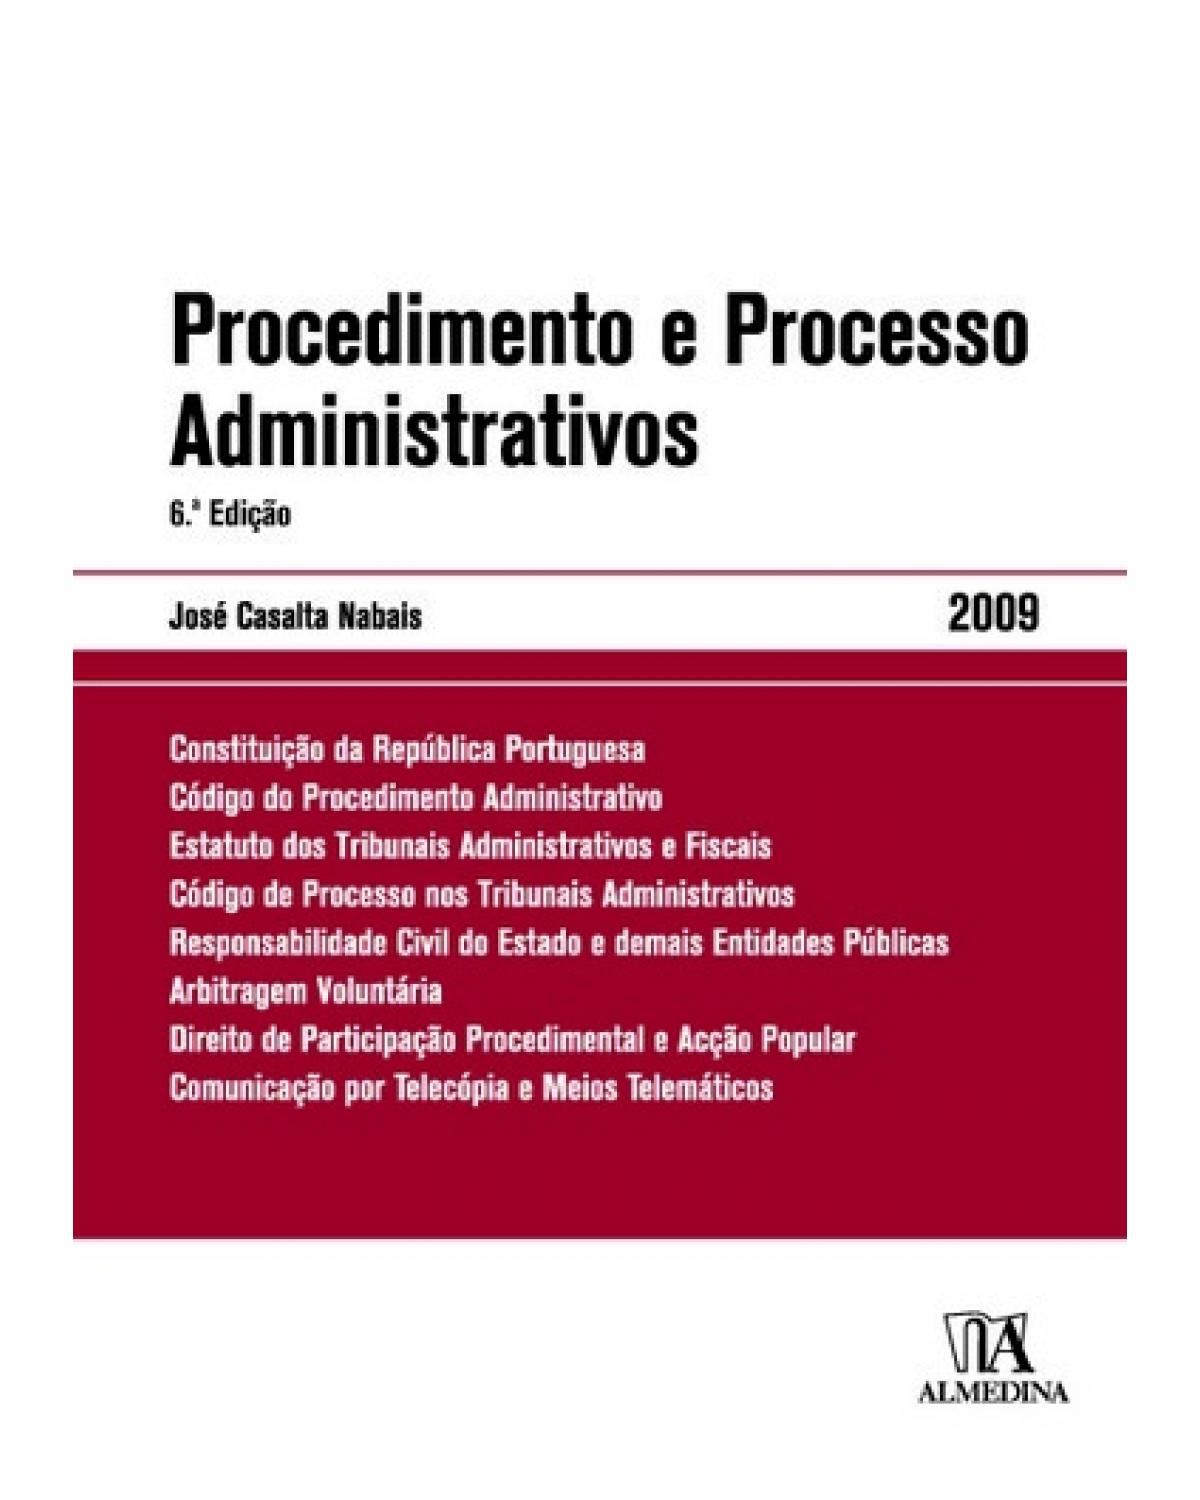 Procedimento e processo administrativos - 6ª Edição | 2009